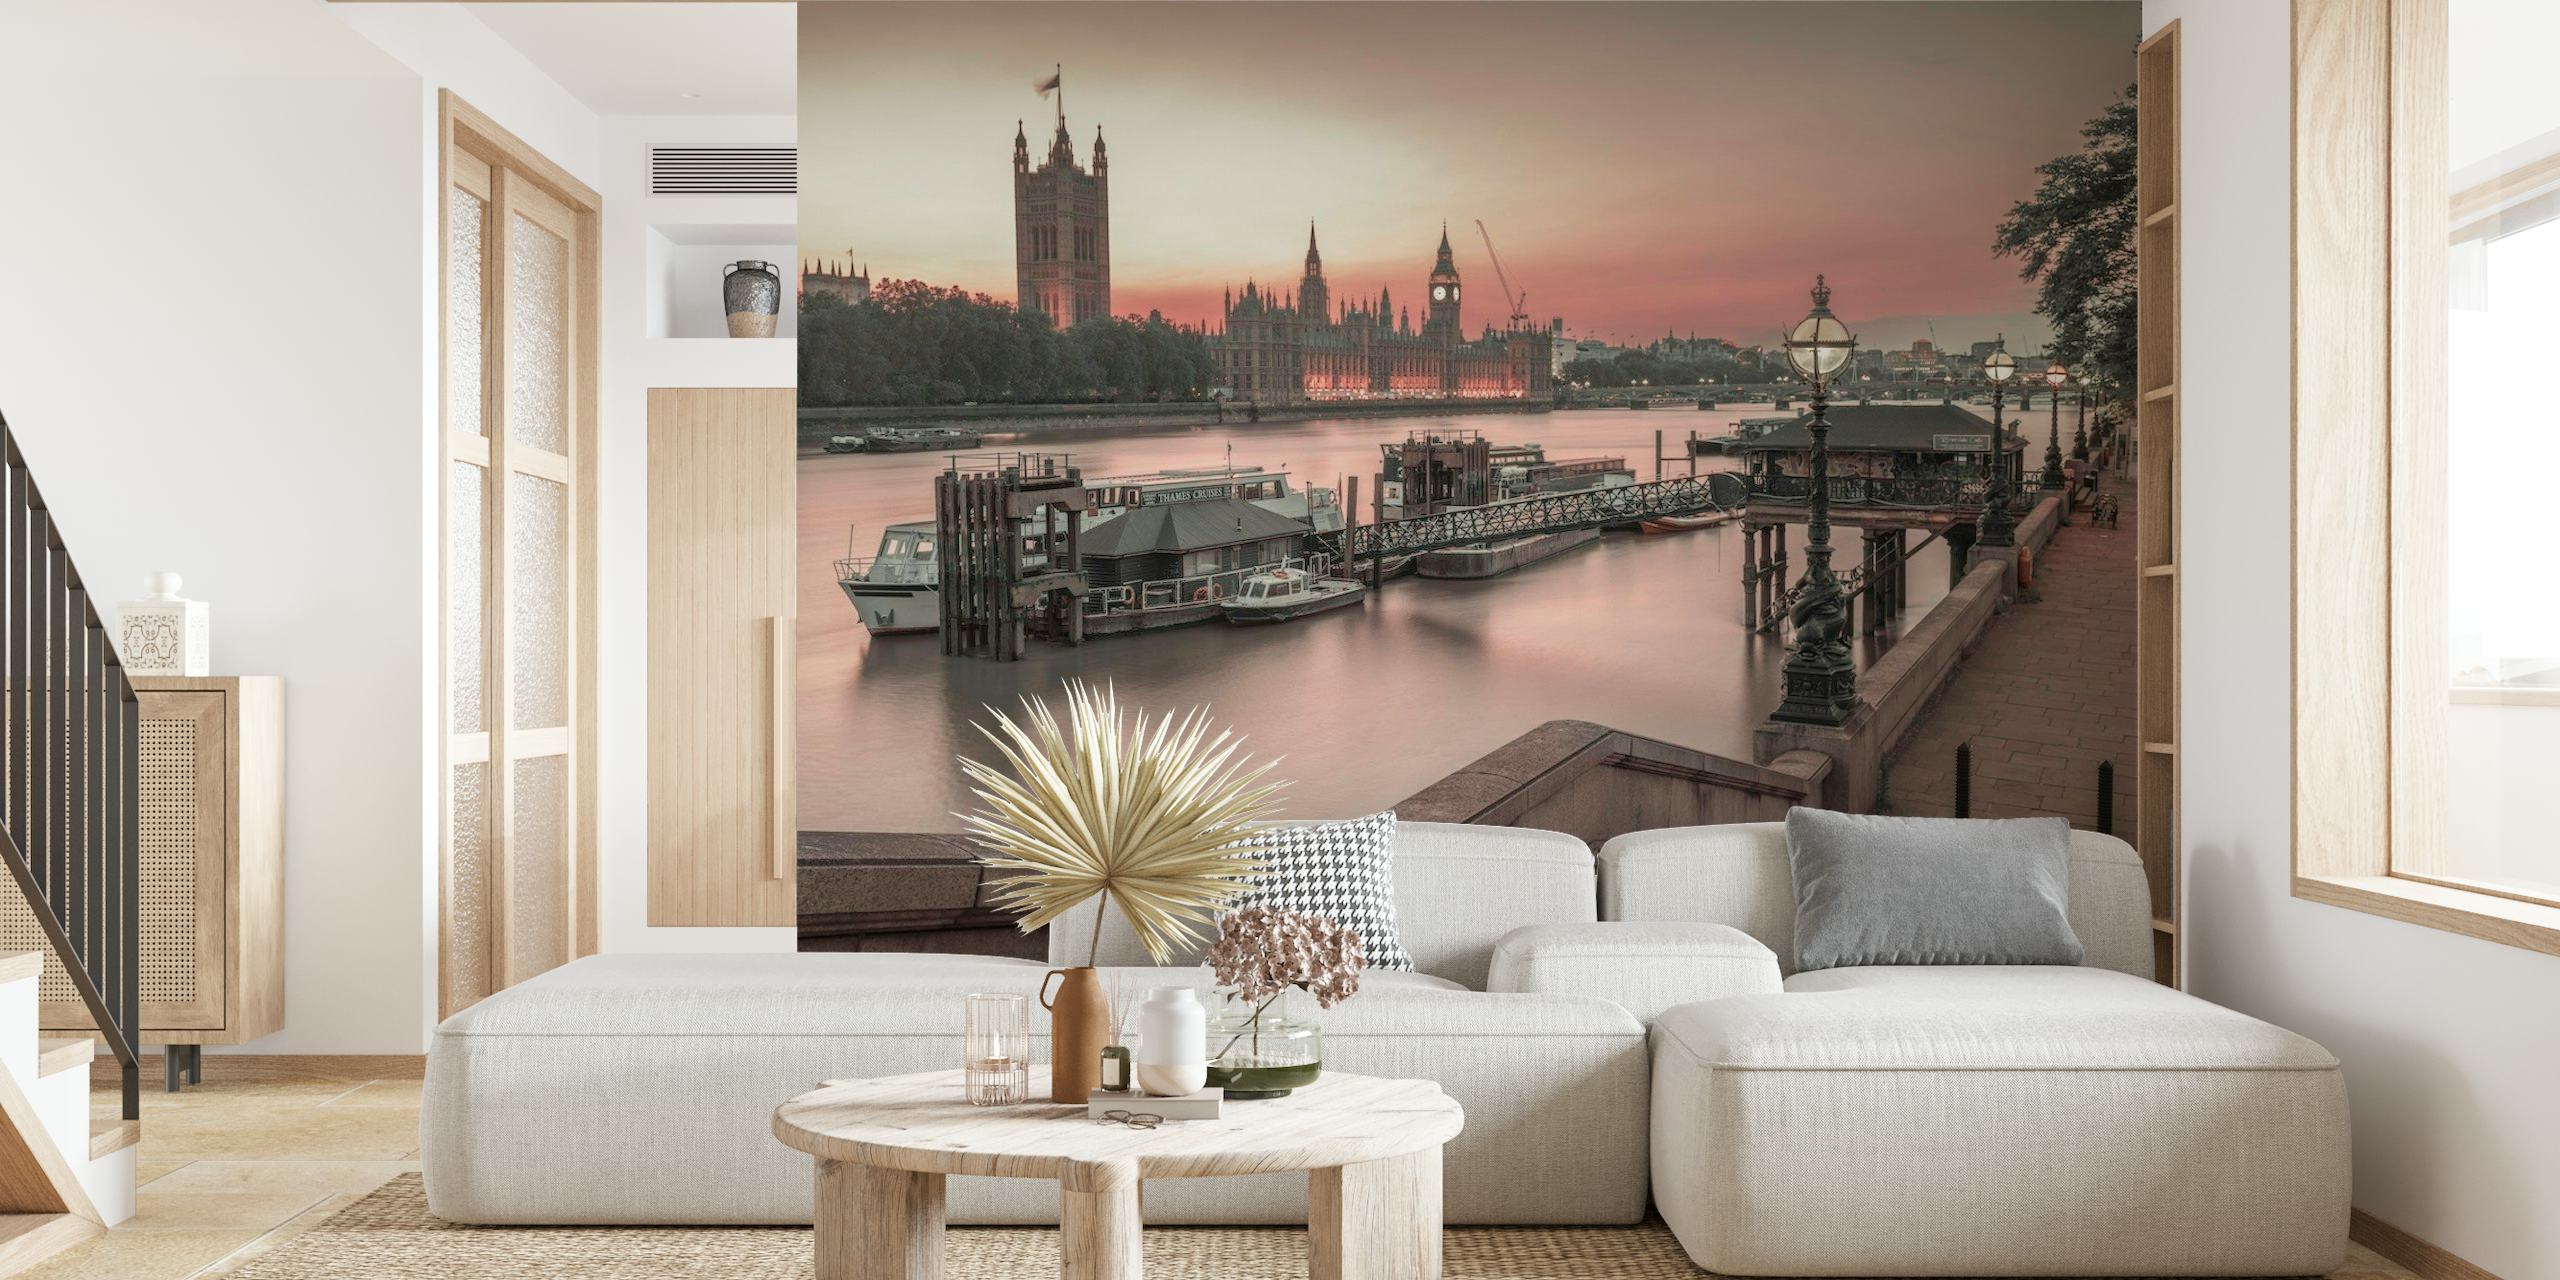 Lontoon horisonttiin valmistava seinämaalaus, jossa on parlamenttitalo ja Big Ben iltahämärässä